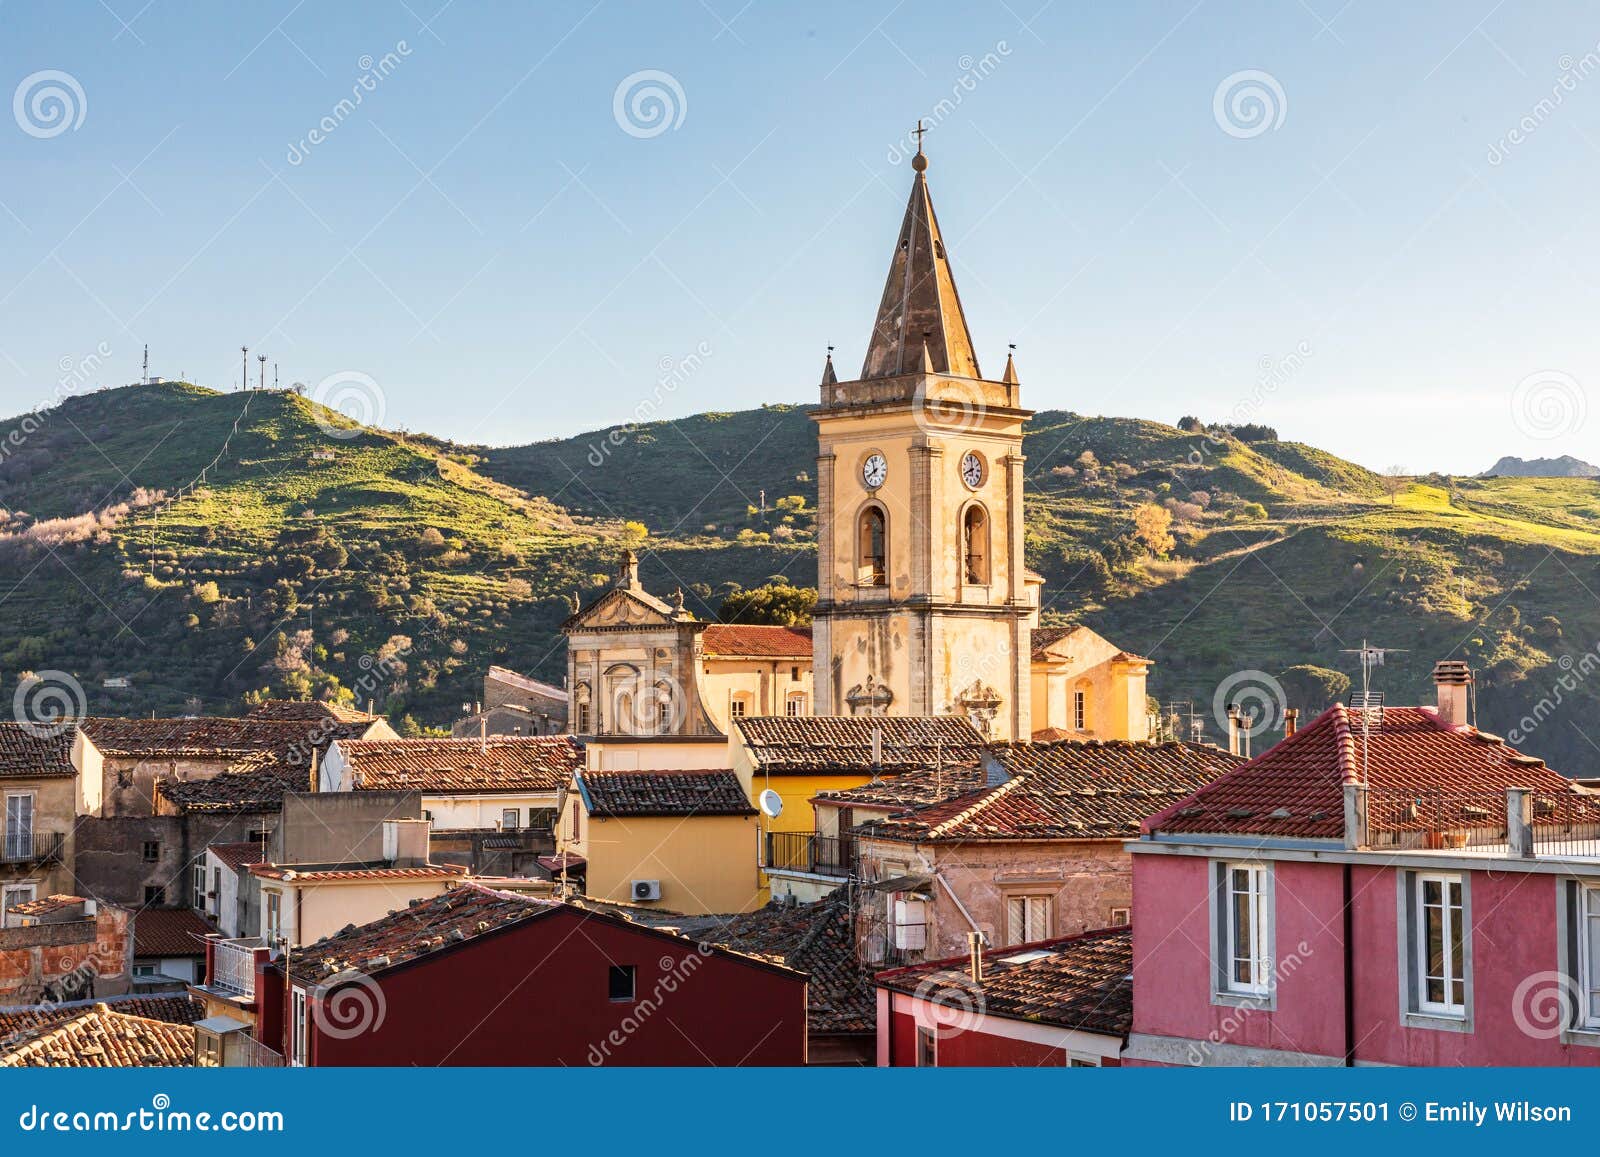 the medieval hill town of francavilla di sicilia